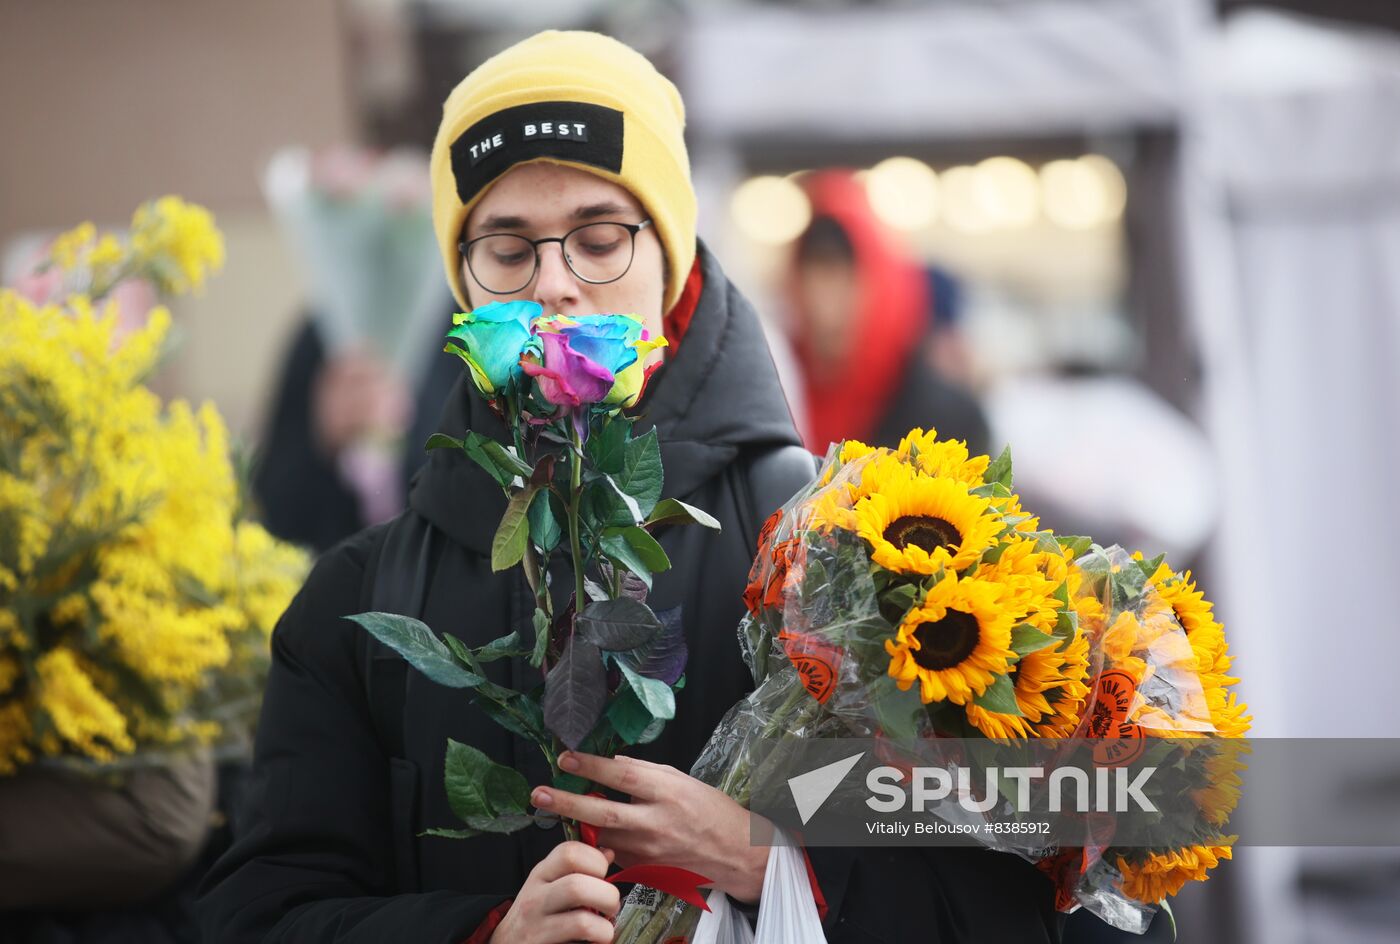 Russia Women’s Day Flower Sales